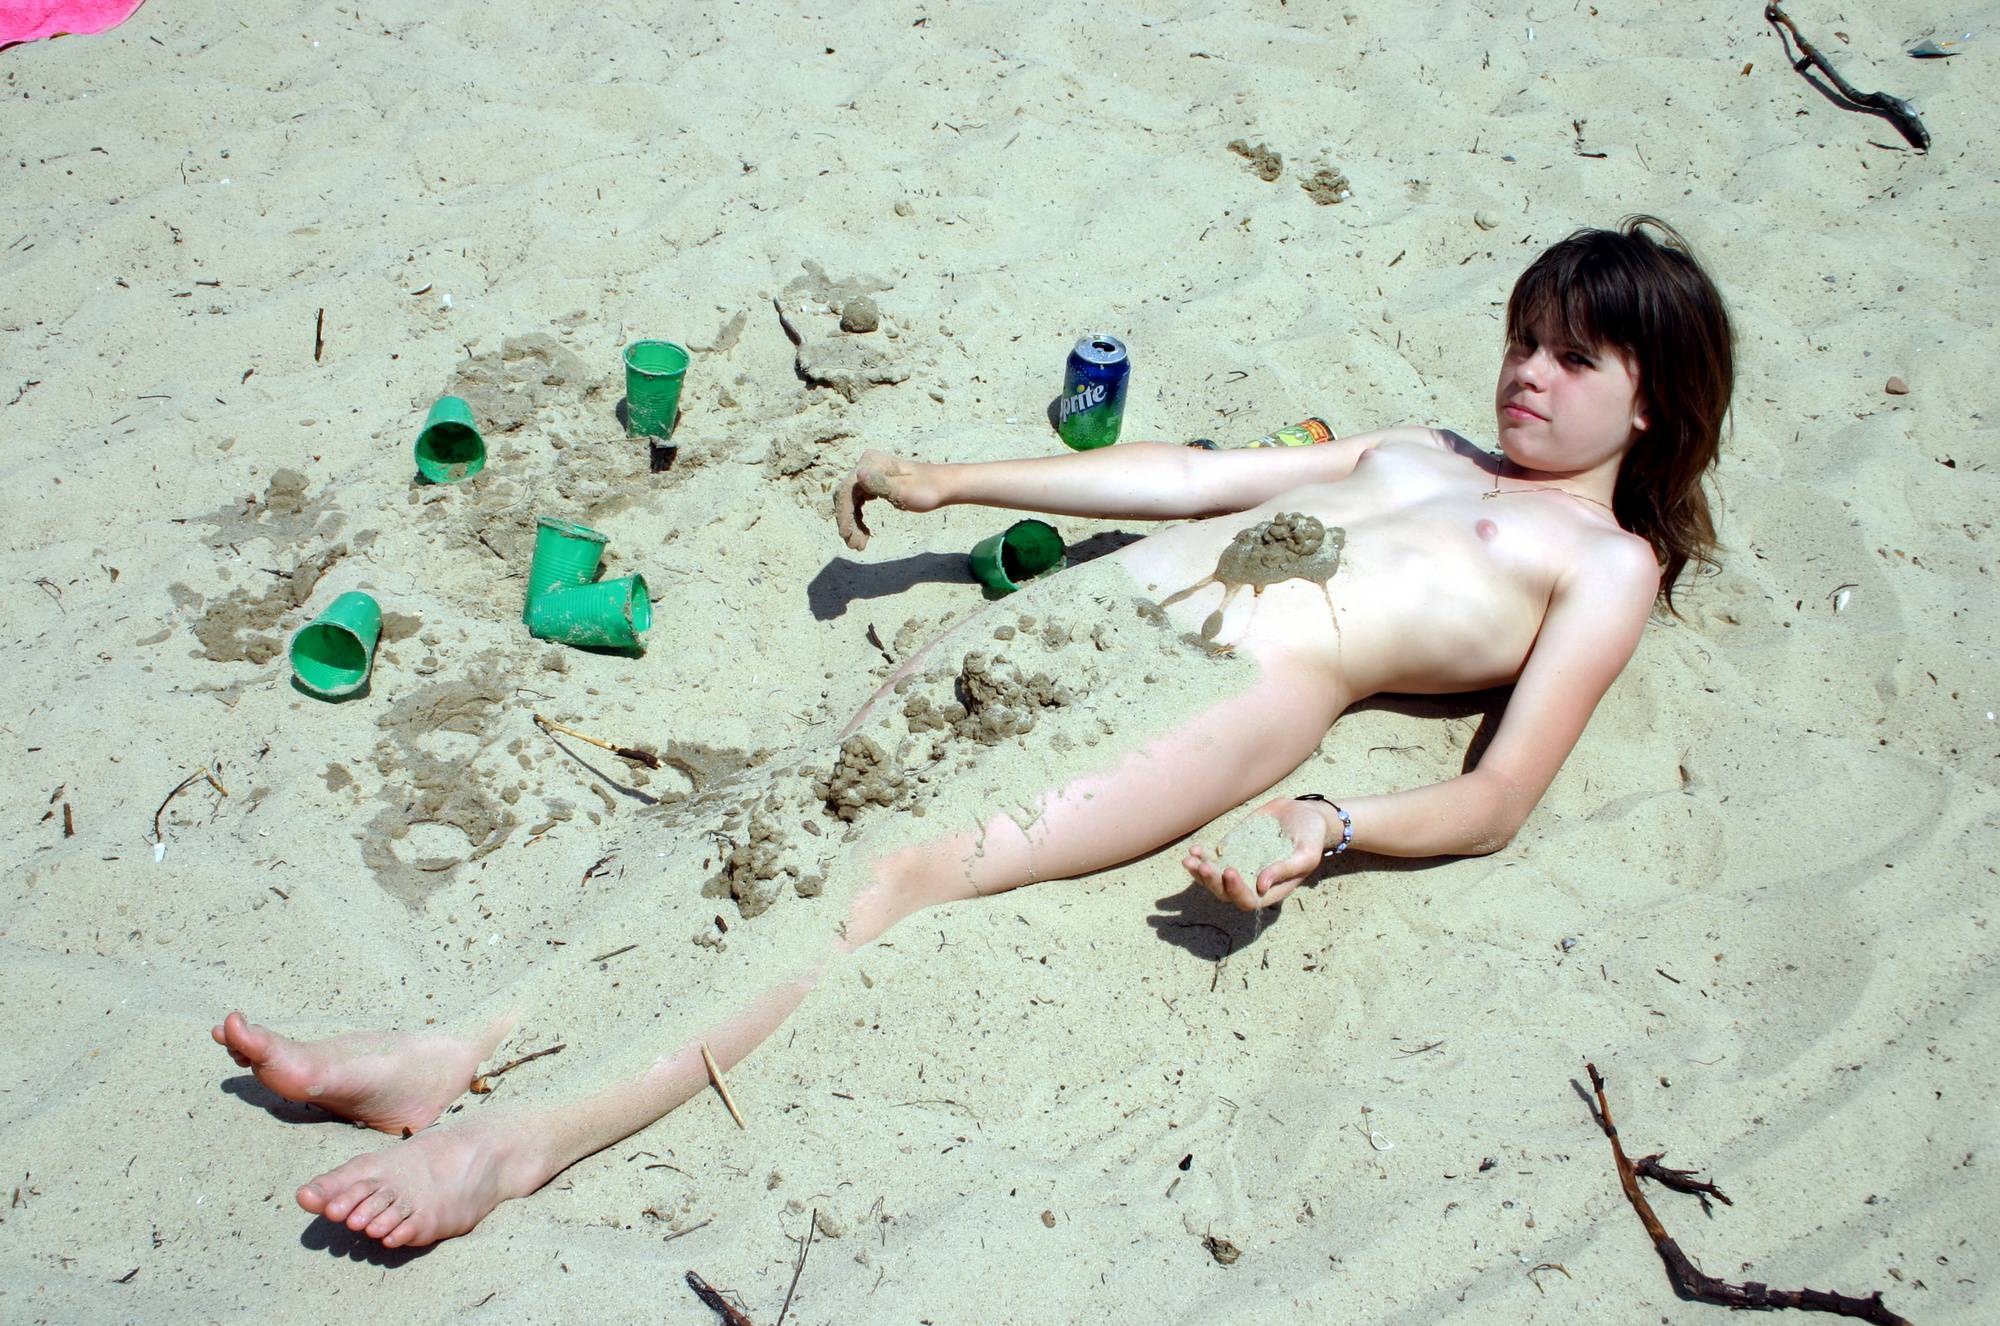 Young Nudist Sand Castle Nudist Photos - 2